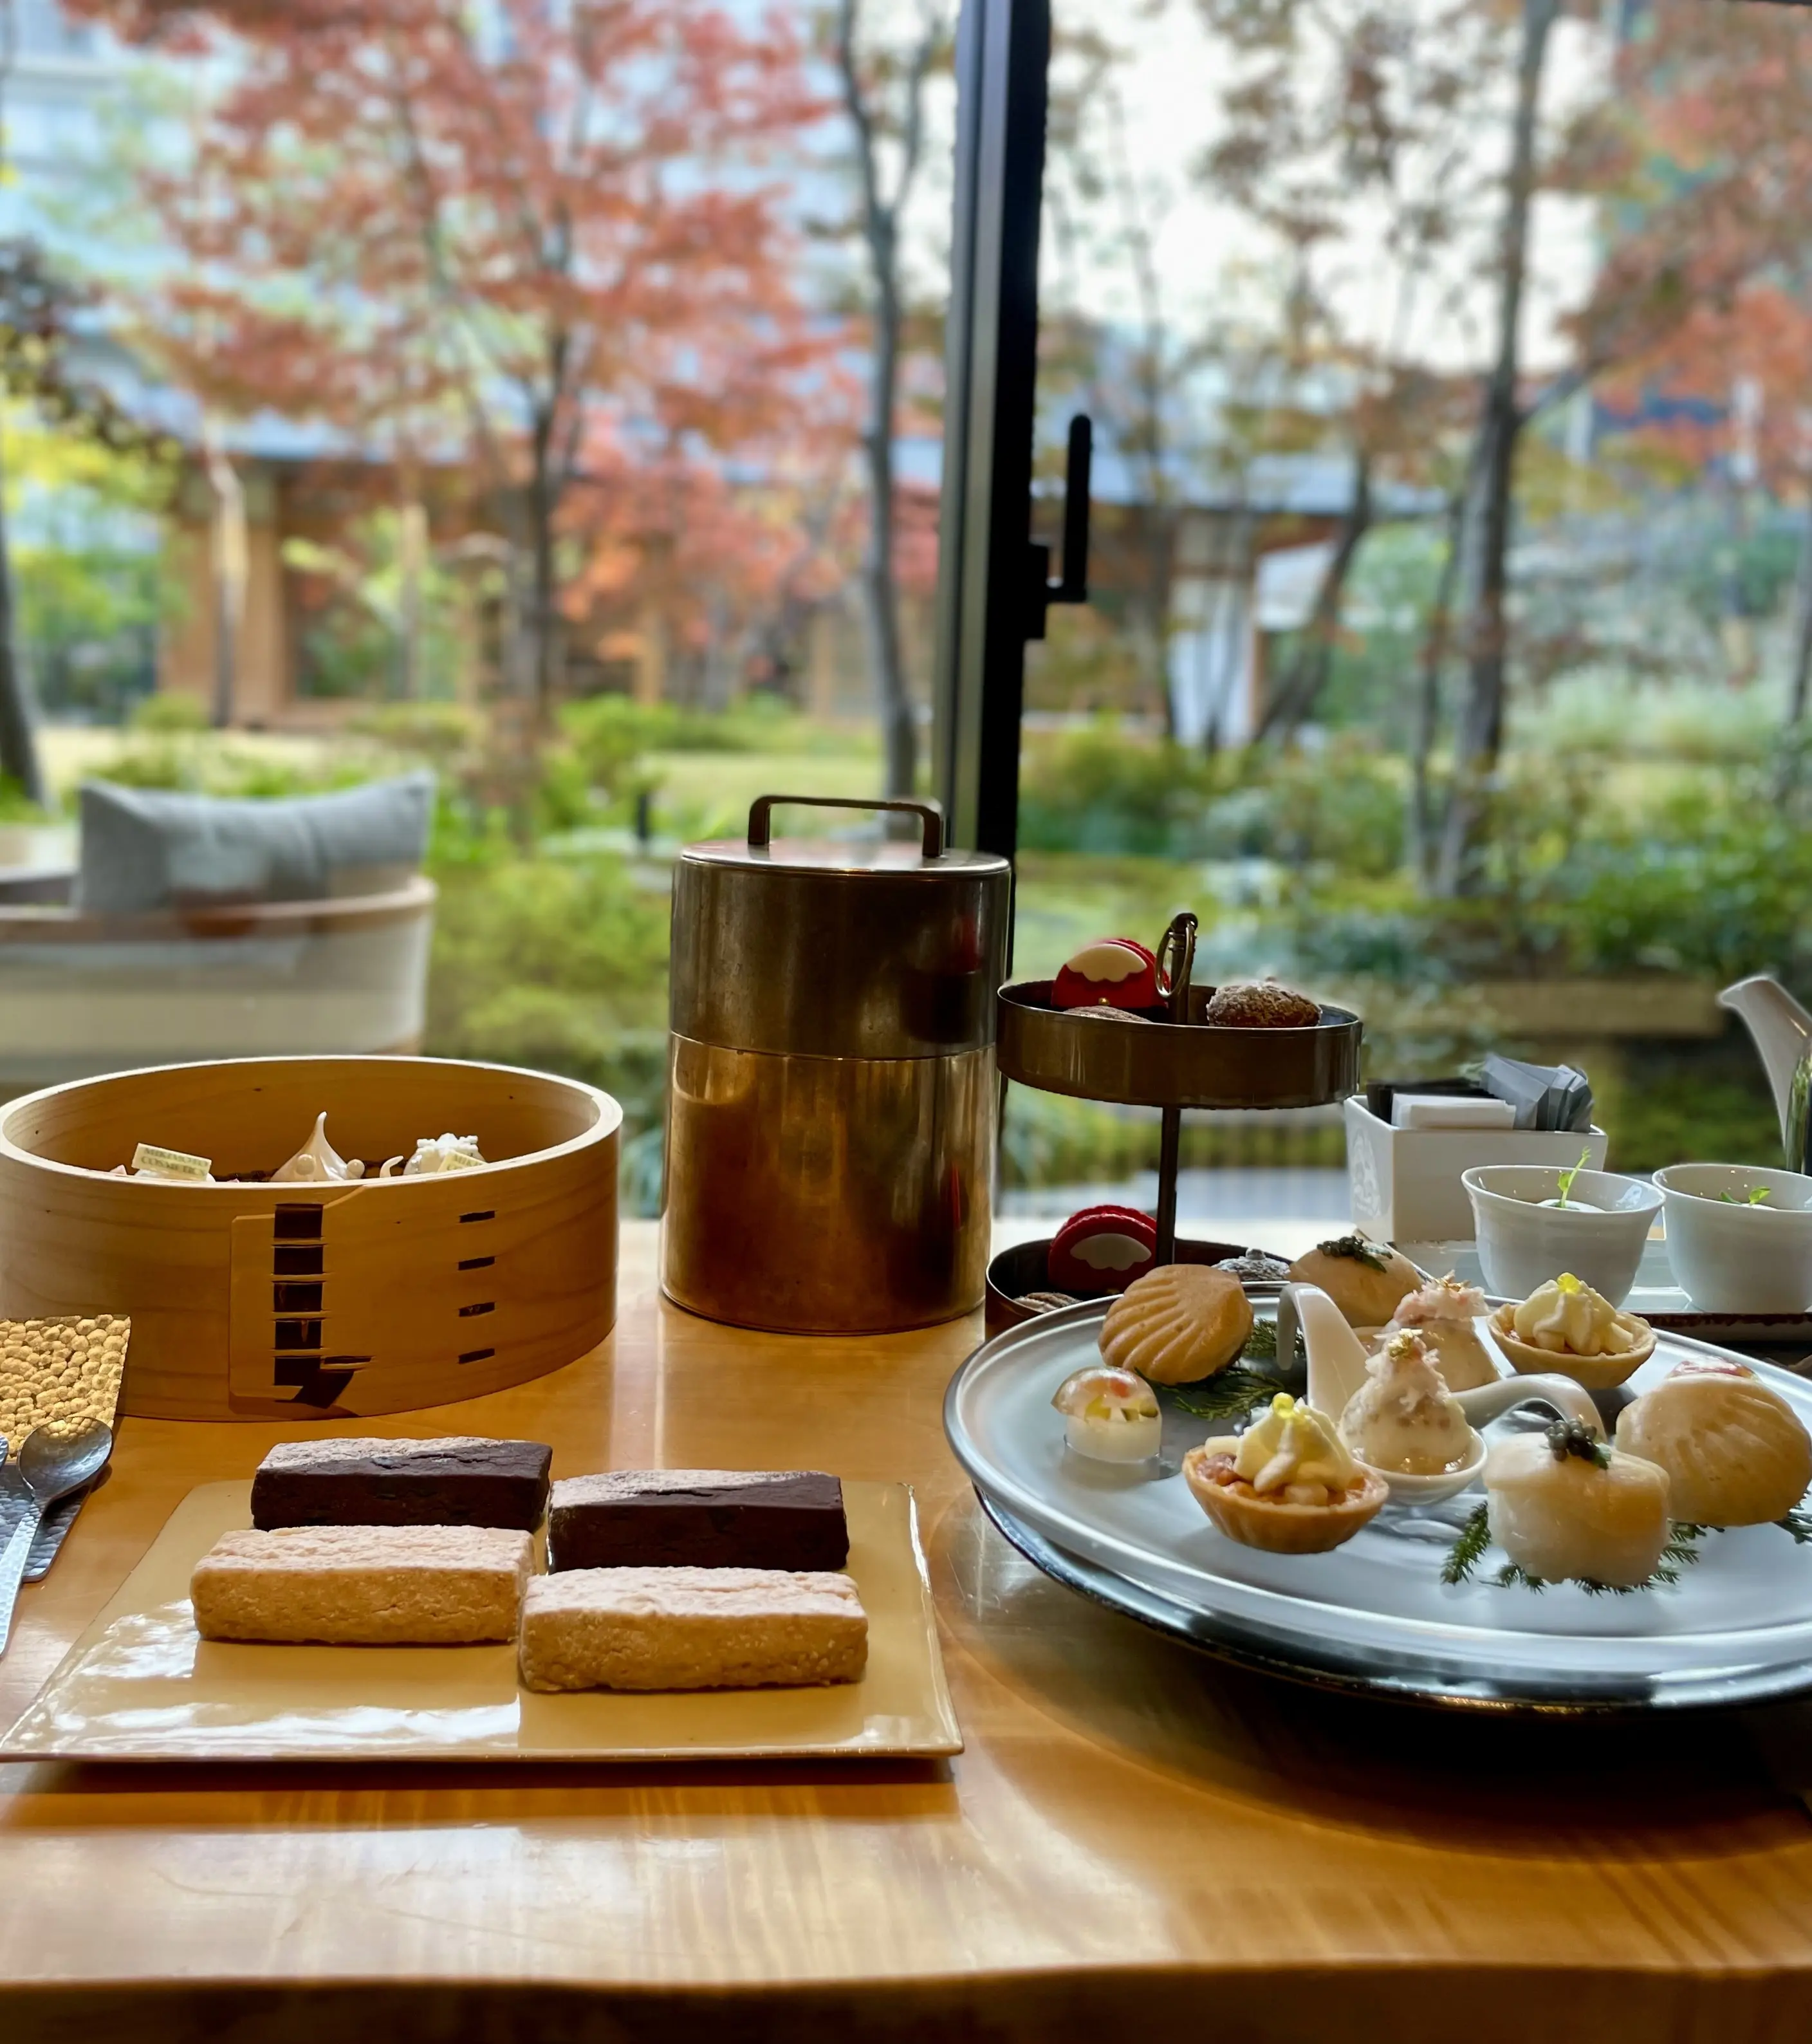 美しい日本庭園を眺めながら。京都で楽しむアフターヌーンティー_1_5